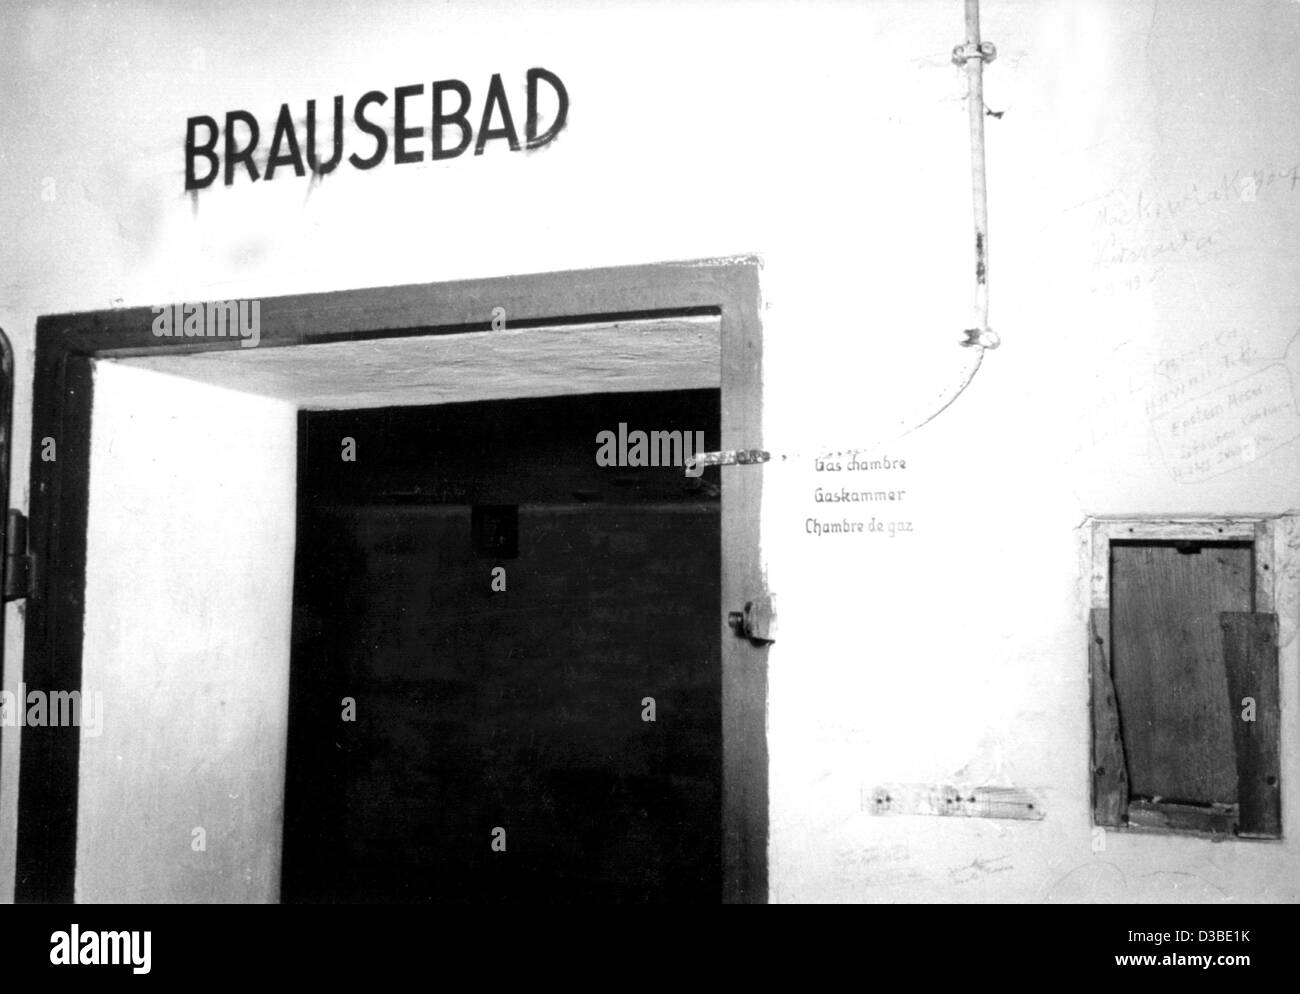 (Dpa-Dateien) - Dies ist das Tor zu einem der fünf Gaskammern, die Nazis im Jahre 1943 im KZ Dachau, Süddeutschland (undatiert Filer) gebaut.  Der Schriftzug über dem Eingang liest "Brausebad" (Dusche).  Auf der rechten Seite des Eingangs erscheinen die Worte "Gaskammer" in drei languag Stockfoto